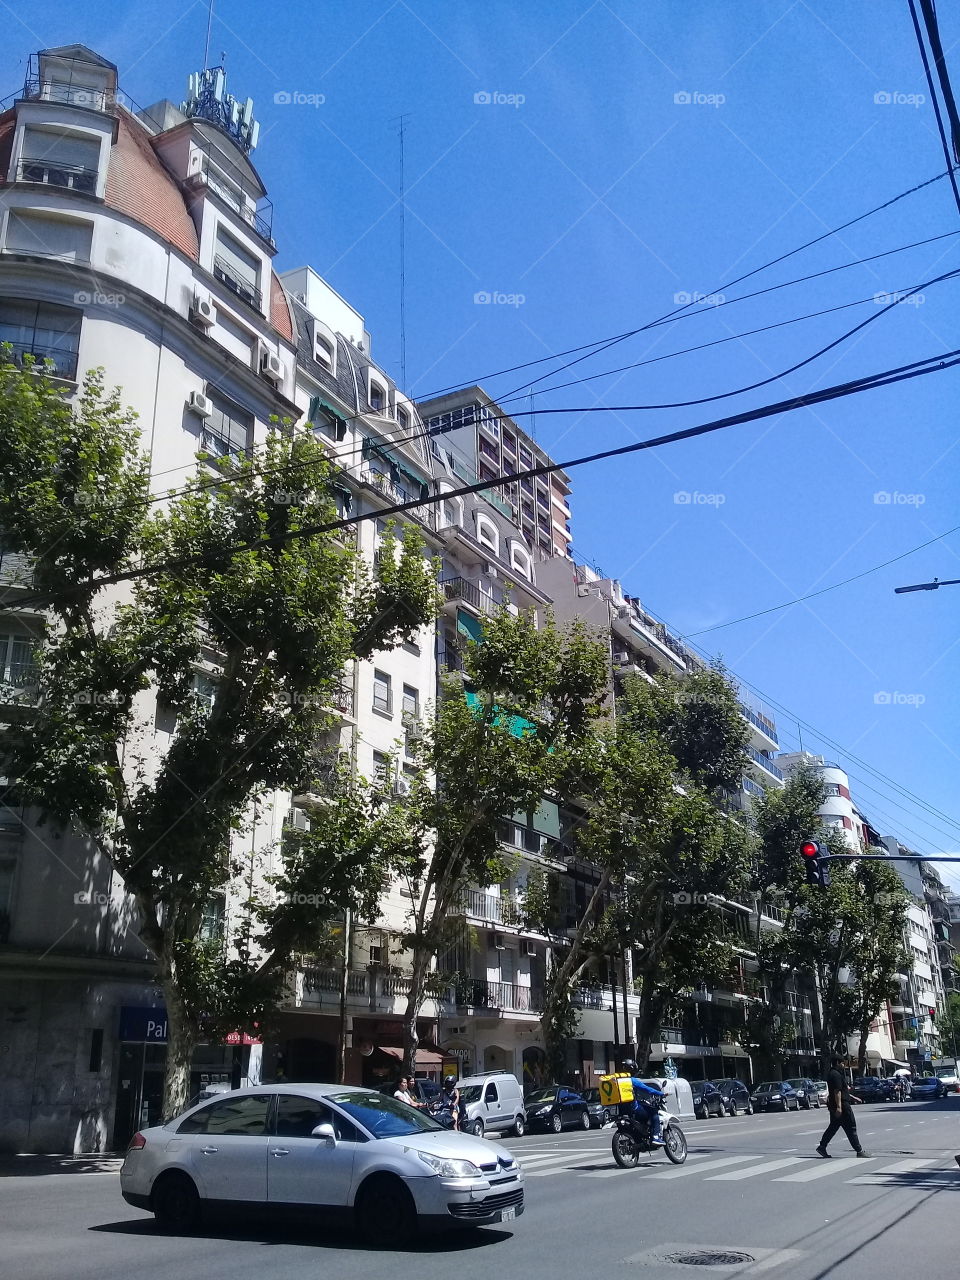 conjunto de antiguos edificios de departamentos situados en una vereda con arboleda, ubicados en una céntrica avenida de la ciudad de Buenos Aires